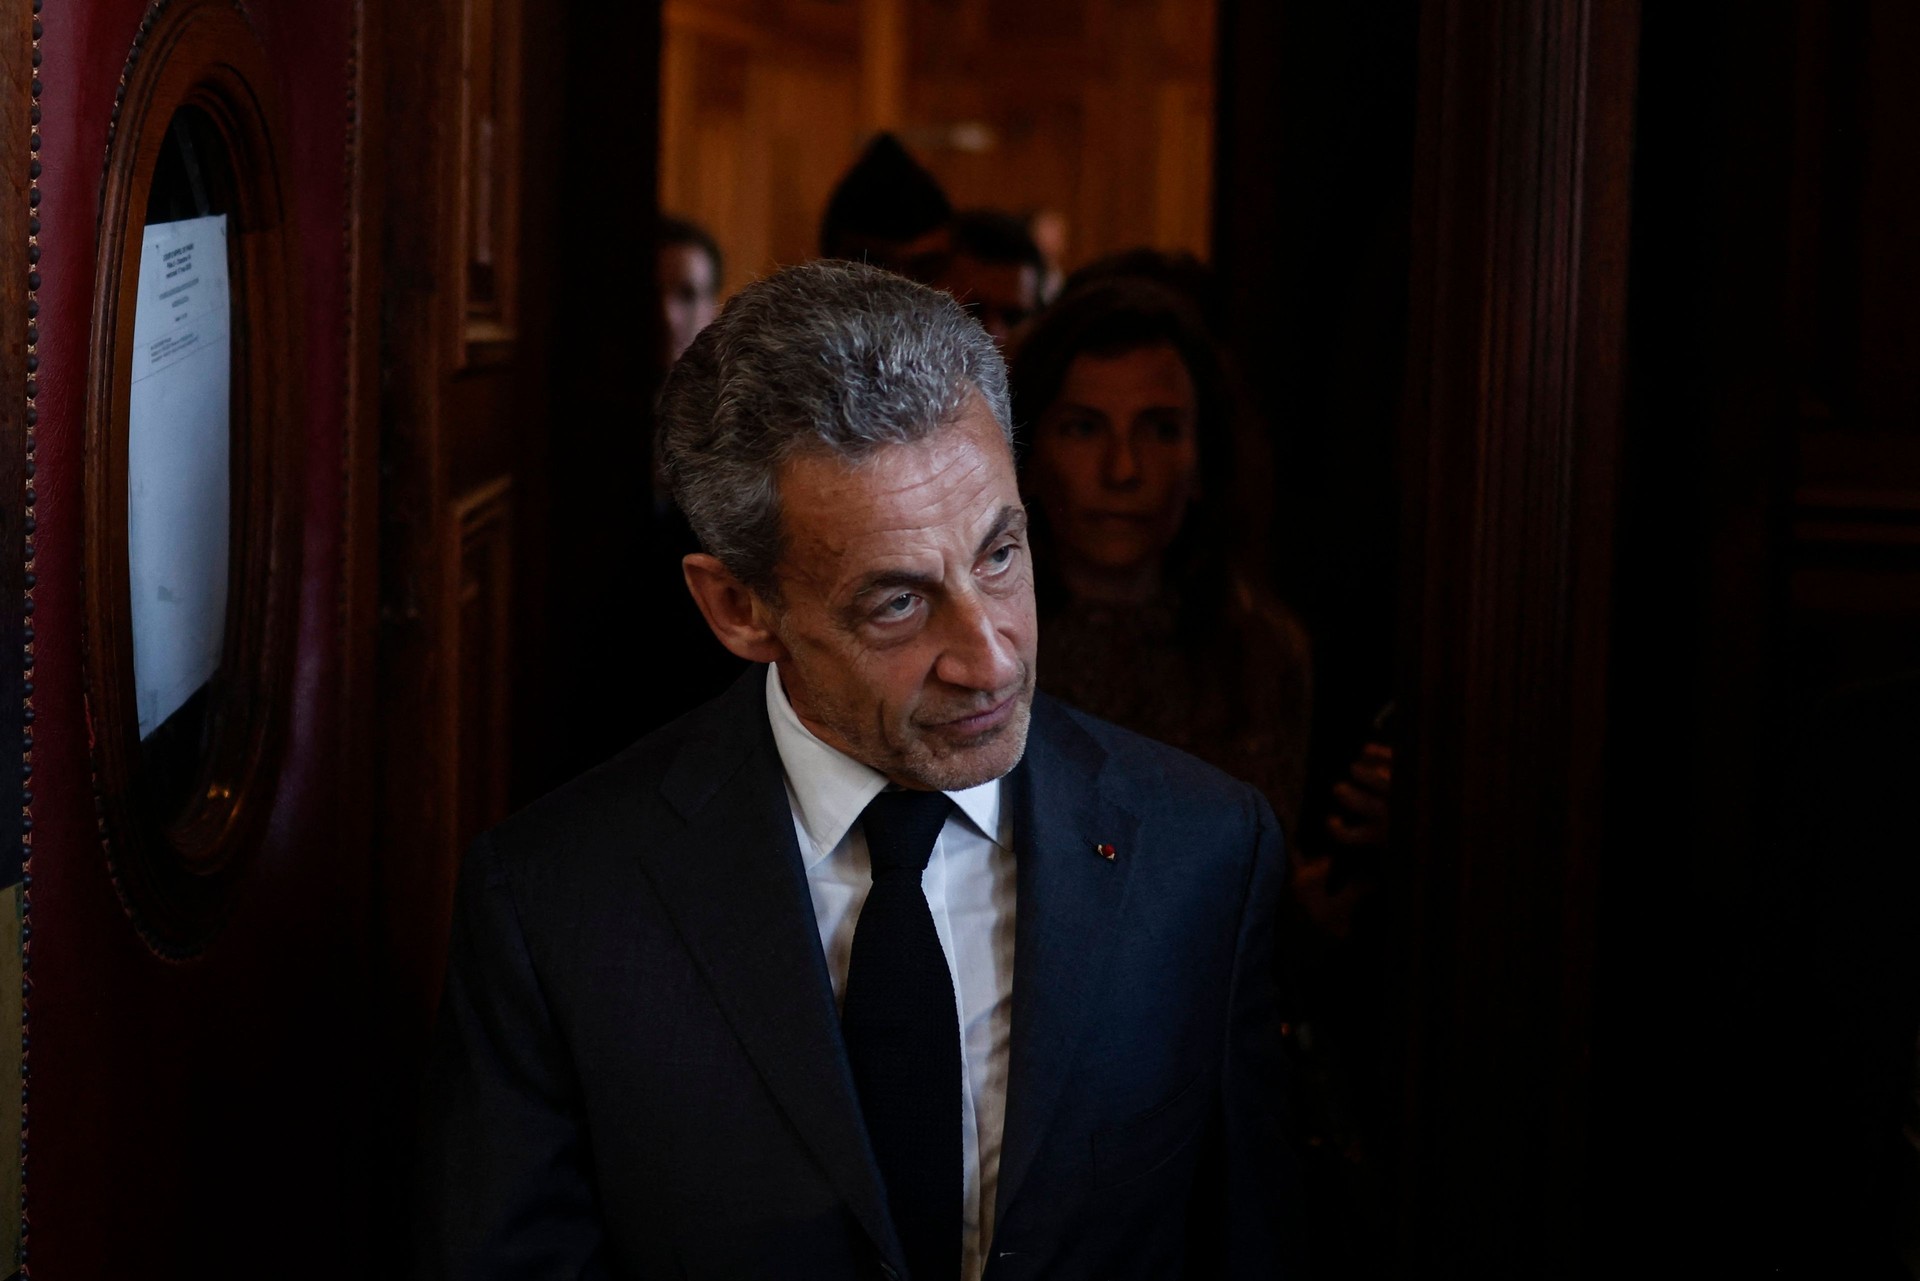 Sarkozy, le tarif de l’appel inchangé